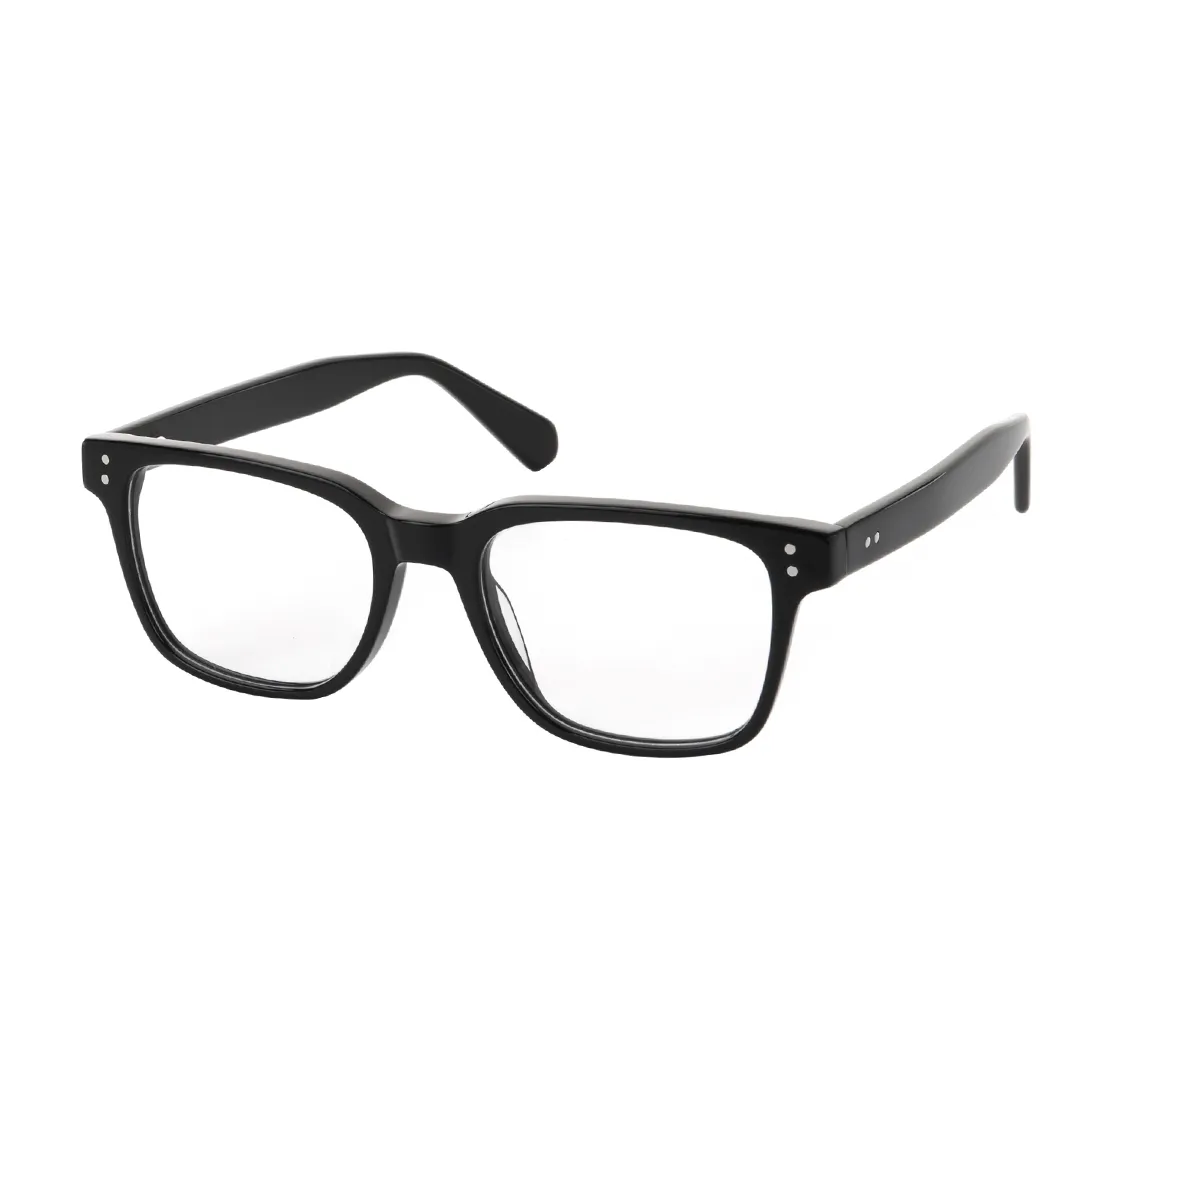 Cecilia - Square Black Glasses for Women - EFE